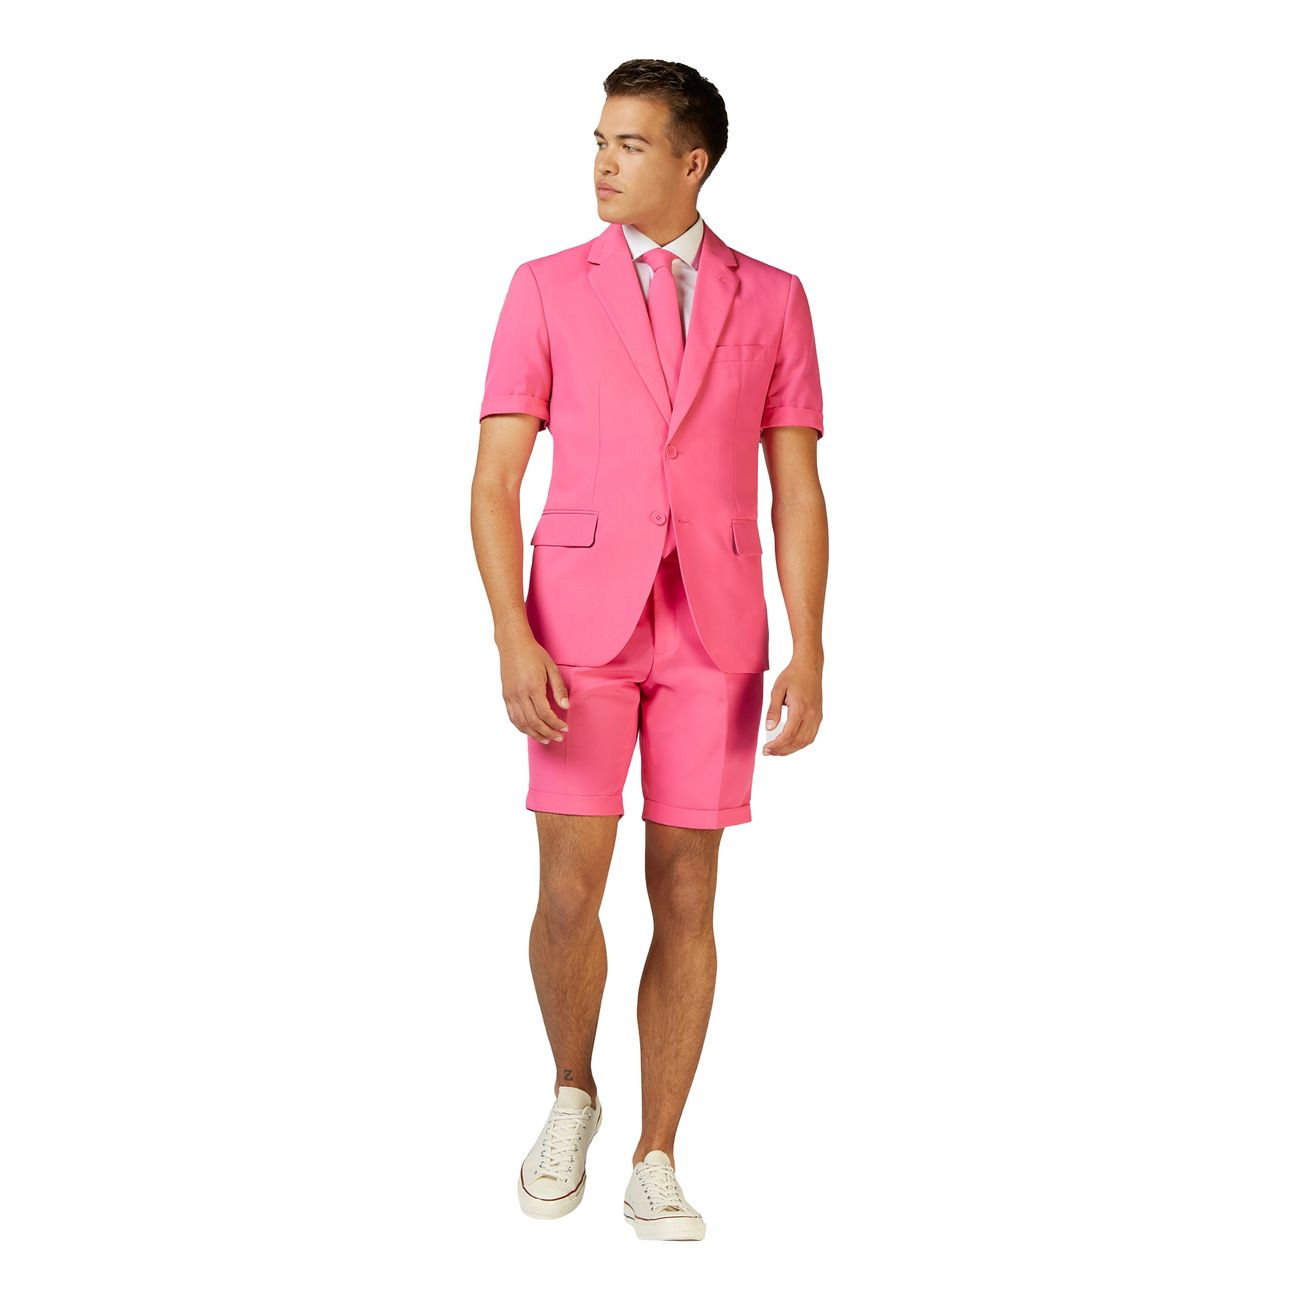 opposuits-mr-pink-shorts-kostym-74443-4